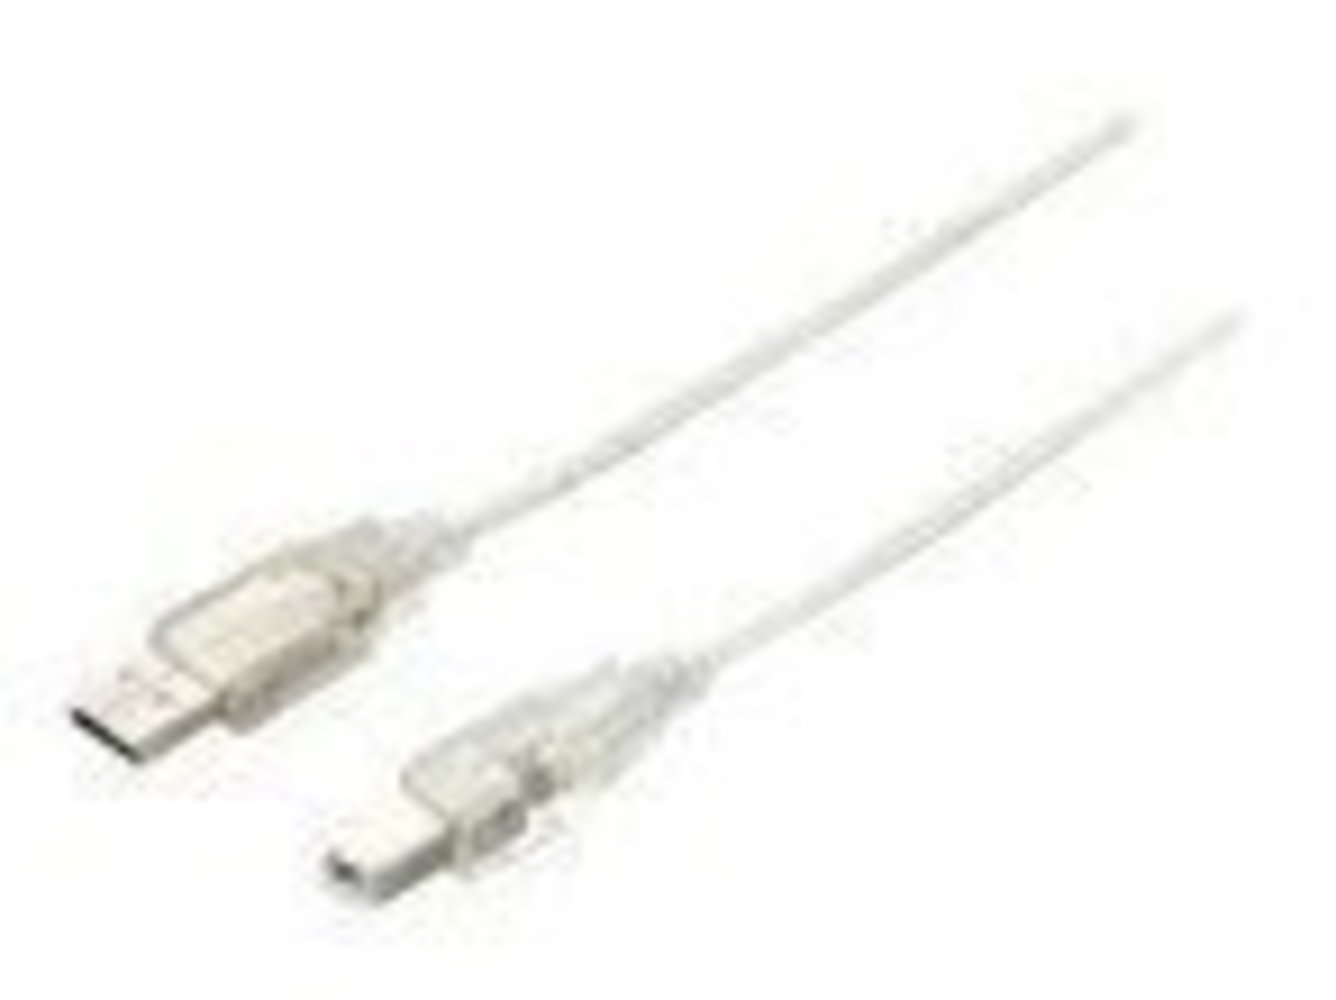 EQUIP USB 2.0 Kabel A->B 1m S/S silbertransparent - Hochwertiges USB Kabel für schnelle Datenübertragung - 1 Meter Länge